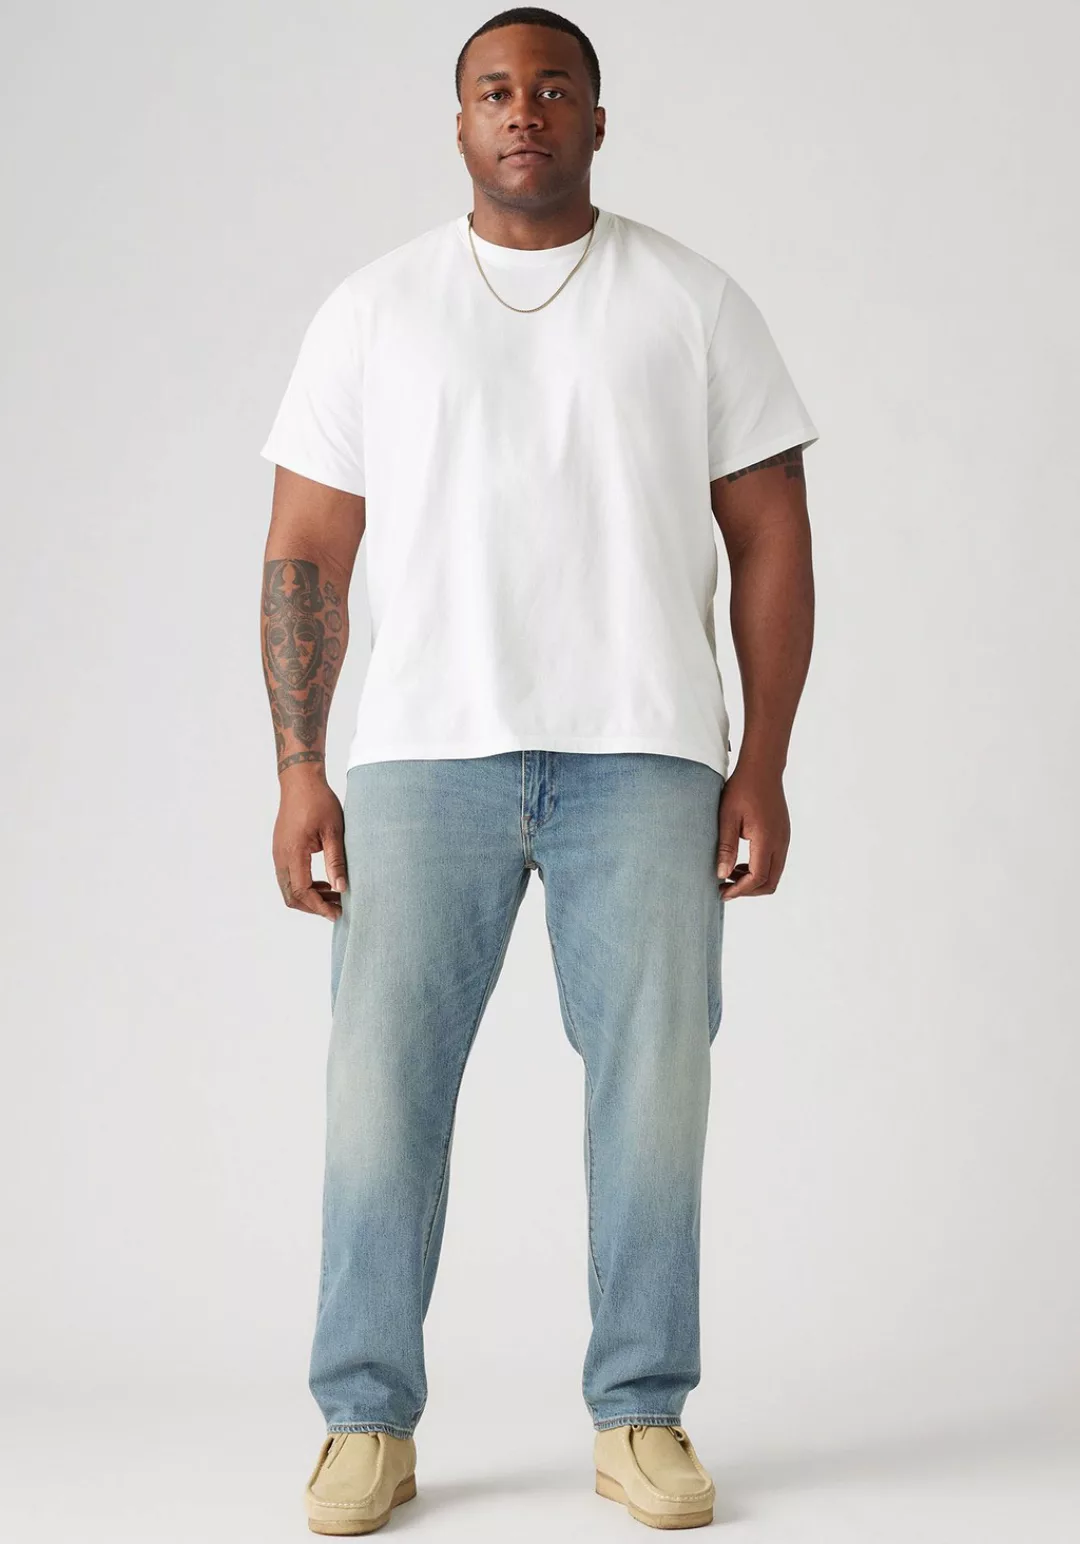 Levis Plus Tapered-fit-Jeans "502 TAPER B&T", für einen lässigen Look günstig online kaufen